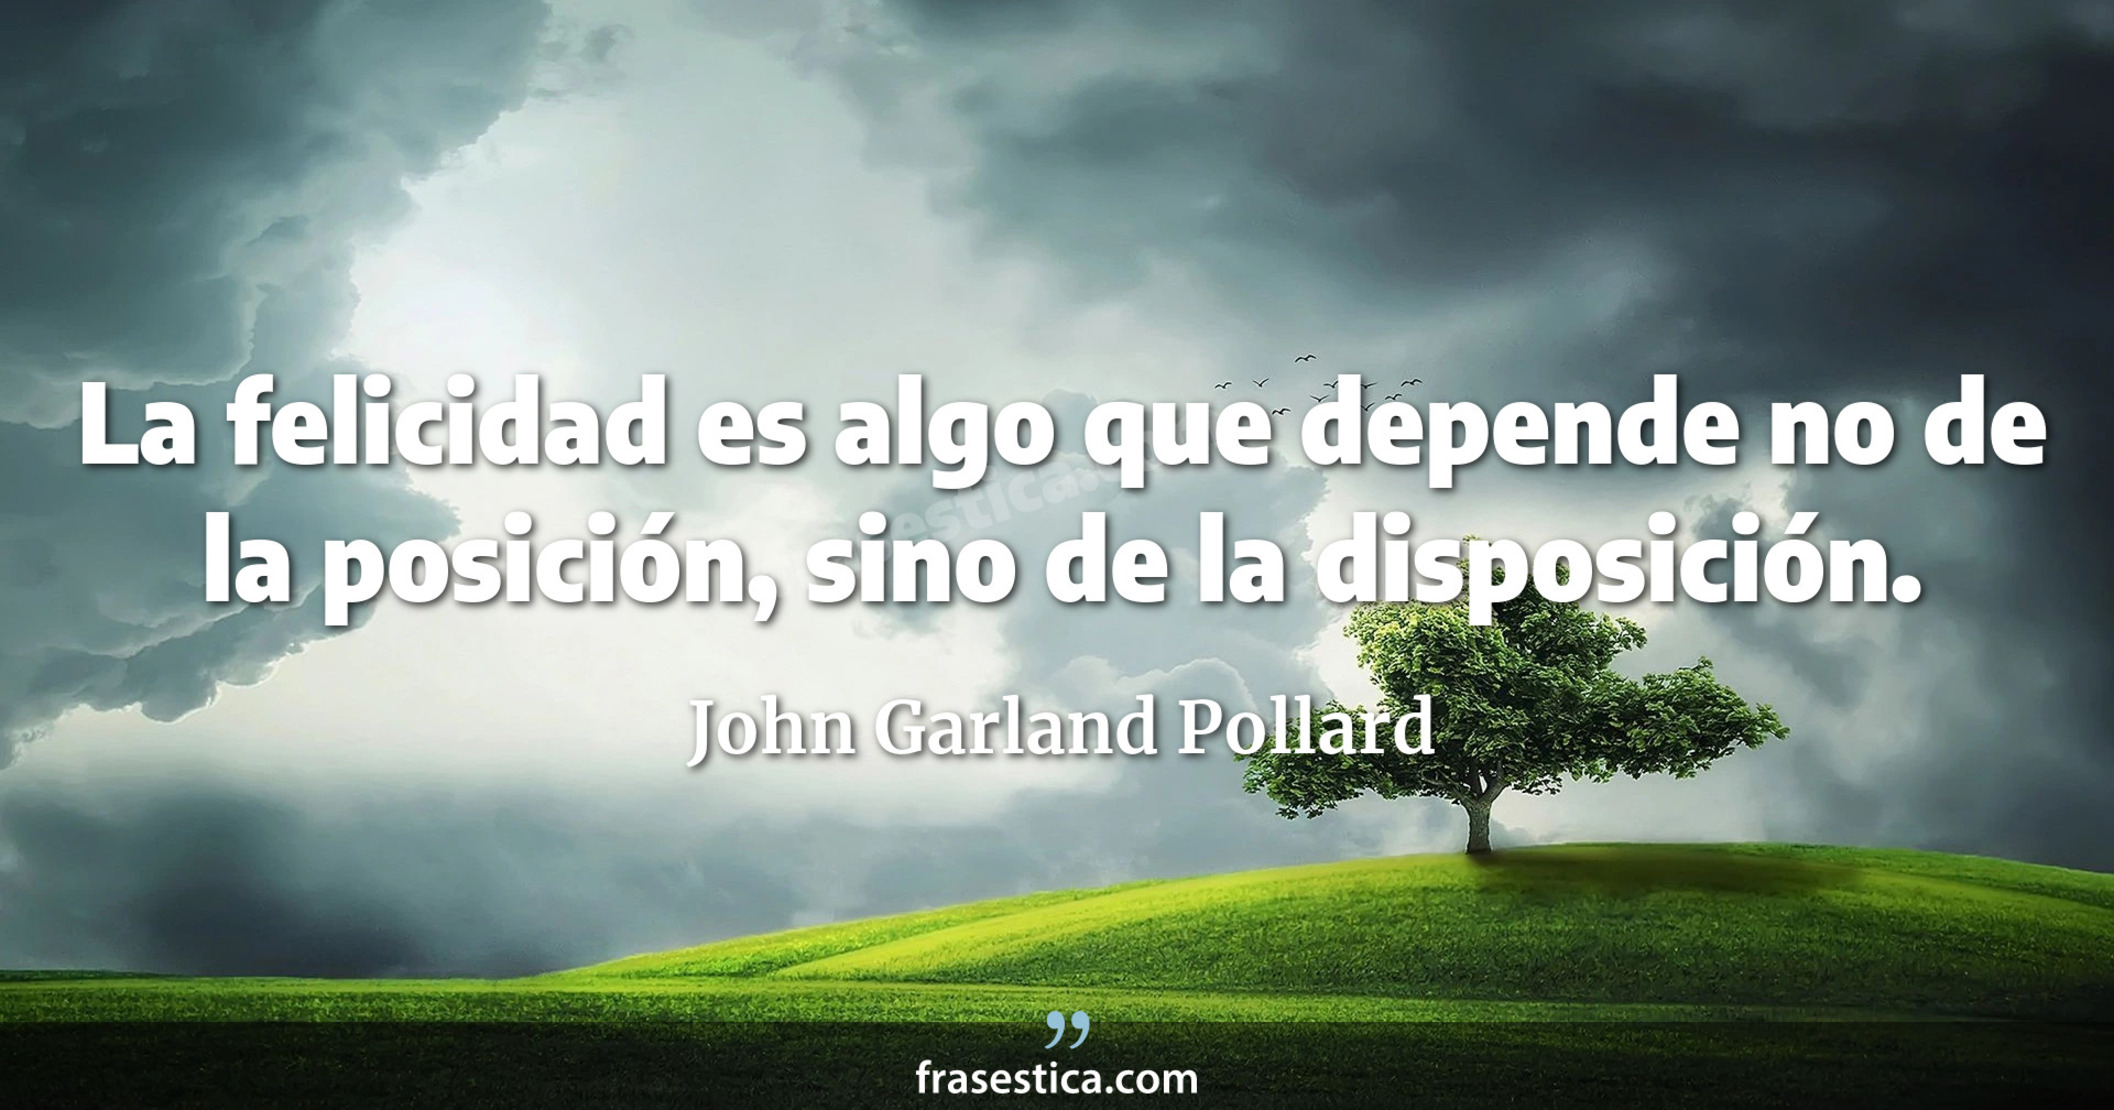 La felicidad es algo que depende no de la posición, sino de la disposición. - John Garland Pollard